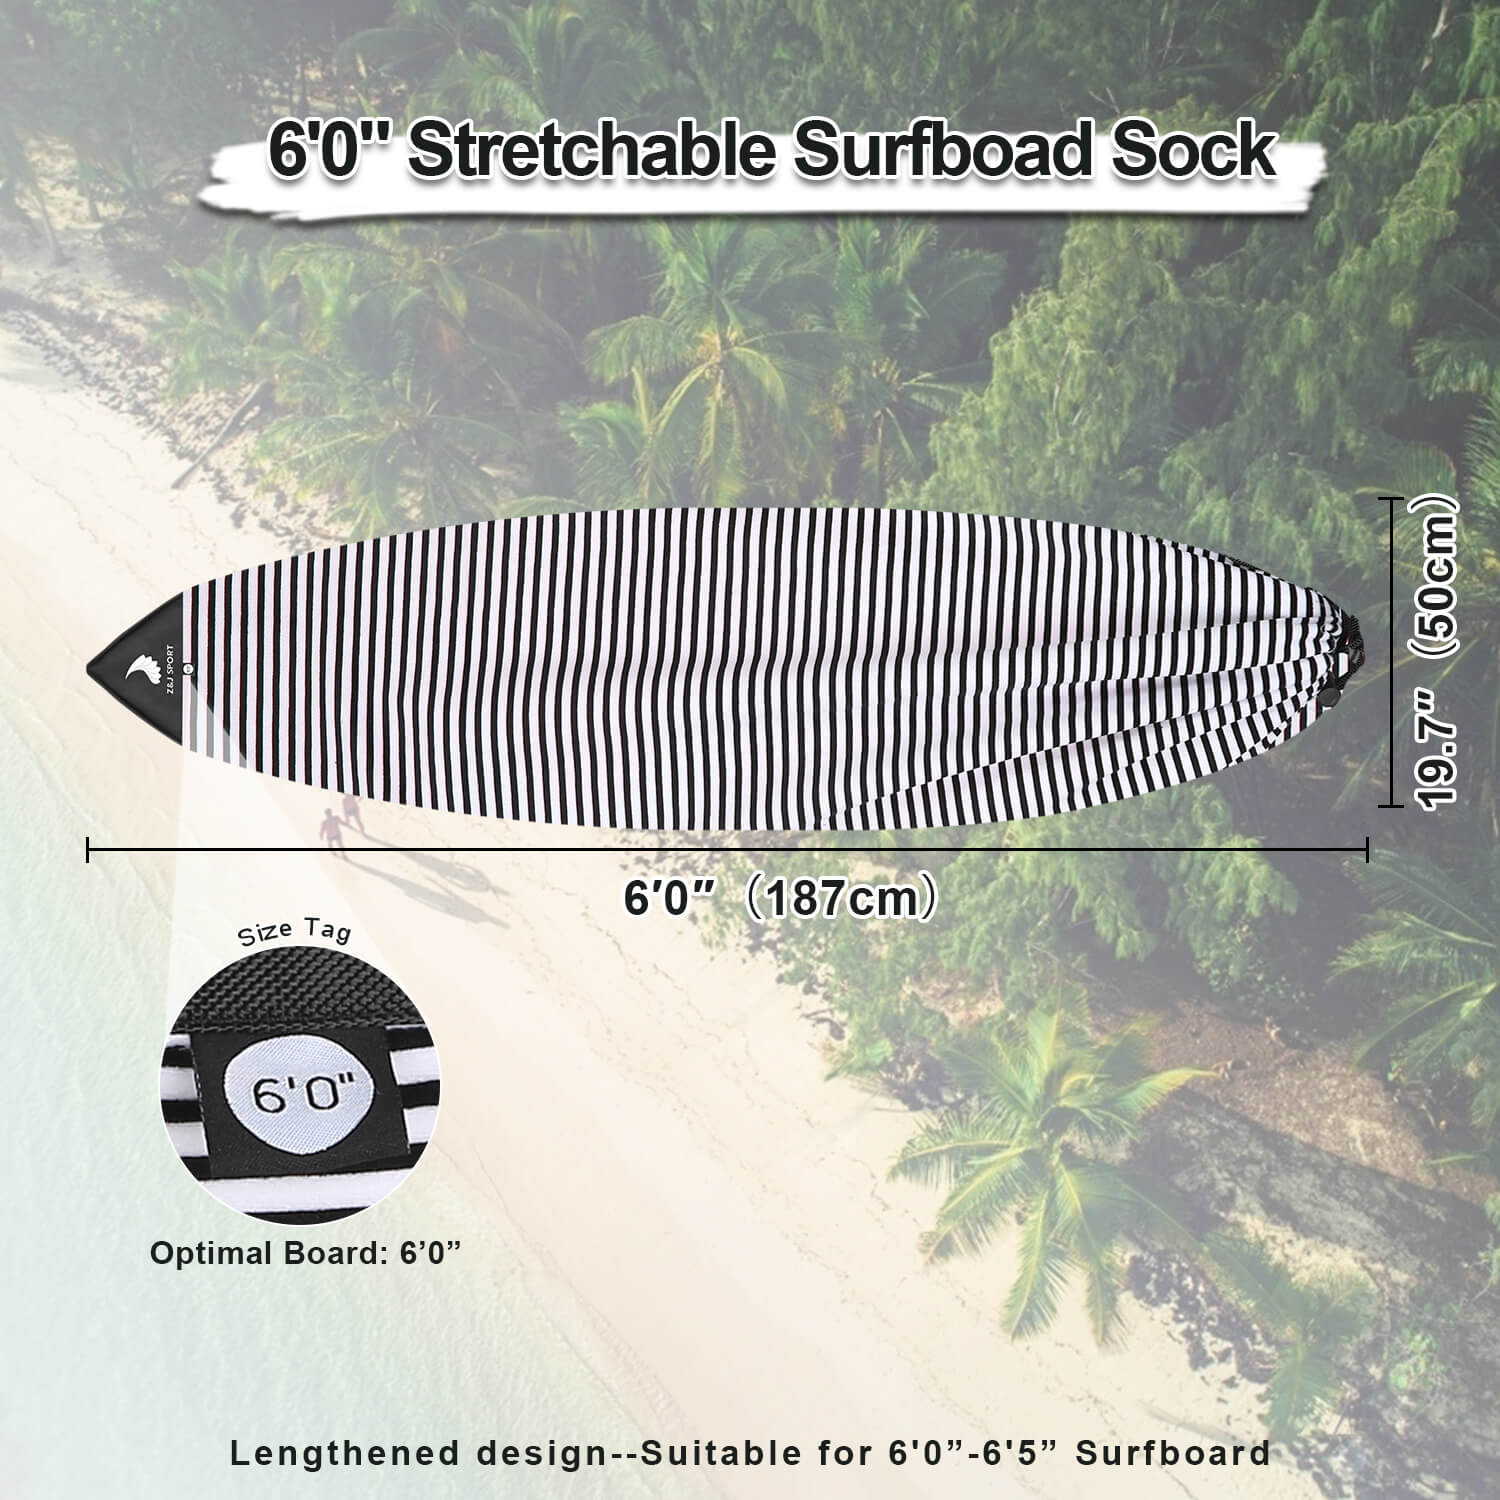 ZJ Surfboard Socke mit Sammelbeutel und Packsack [Kostenloser Versand]